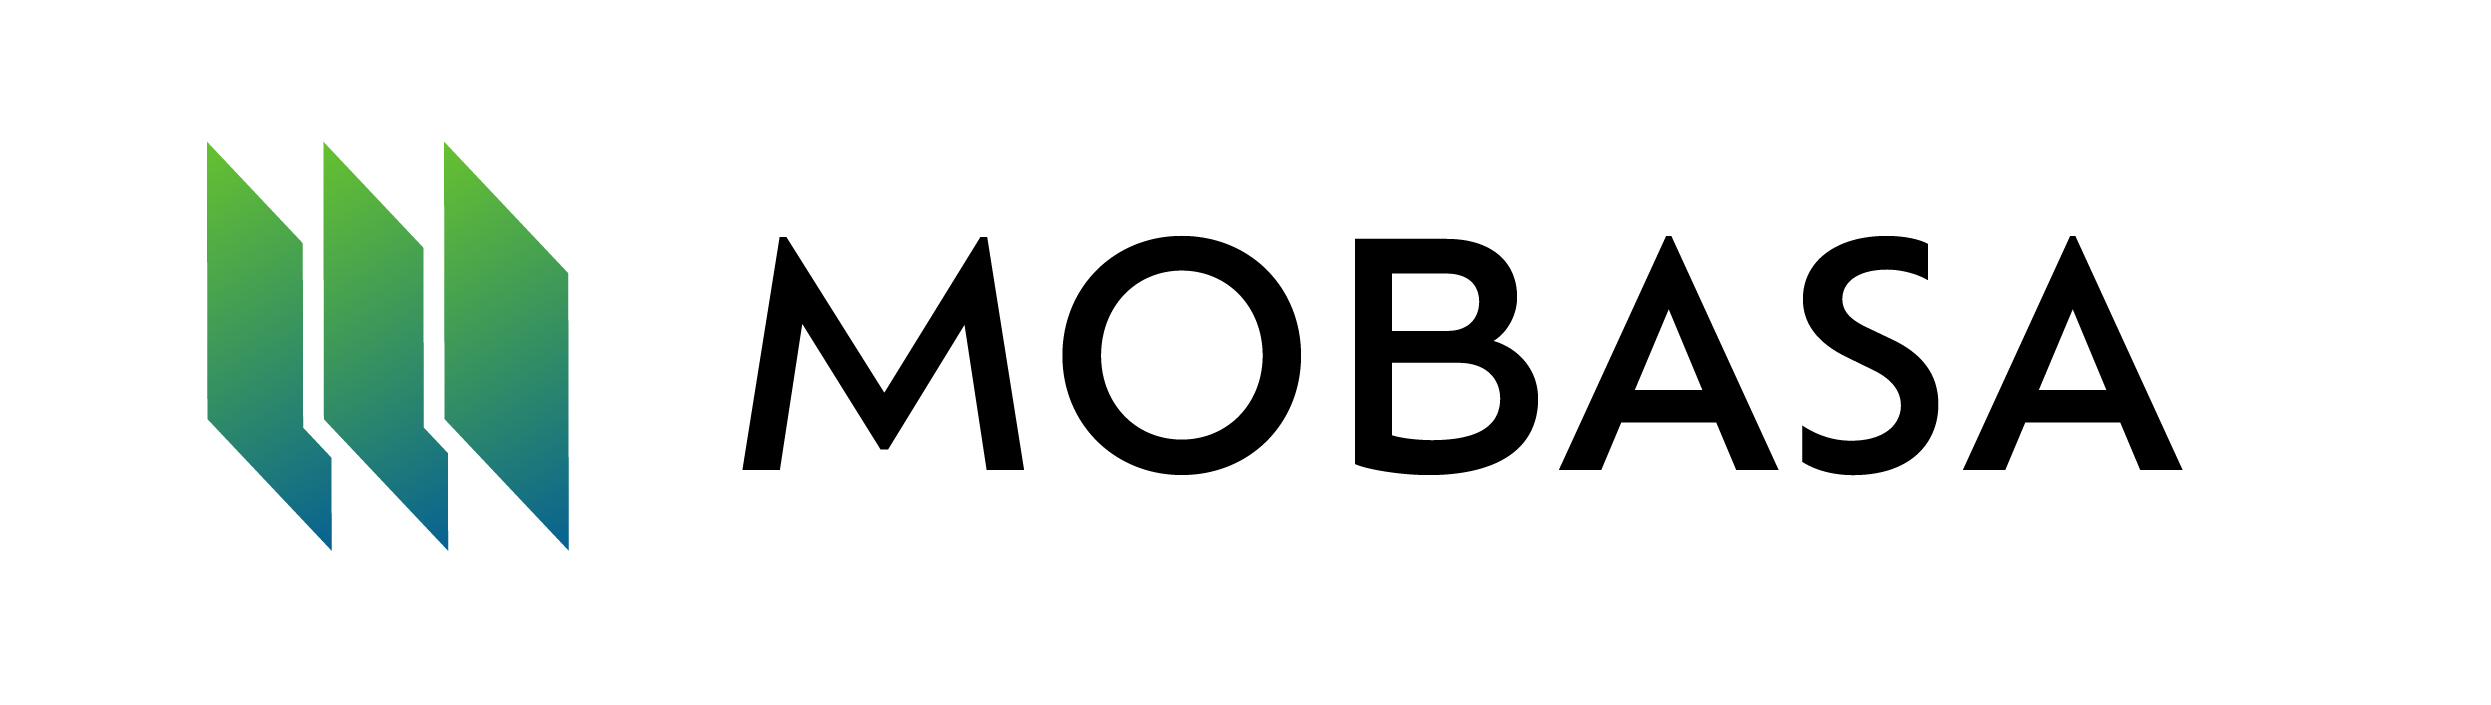 mobasa